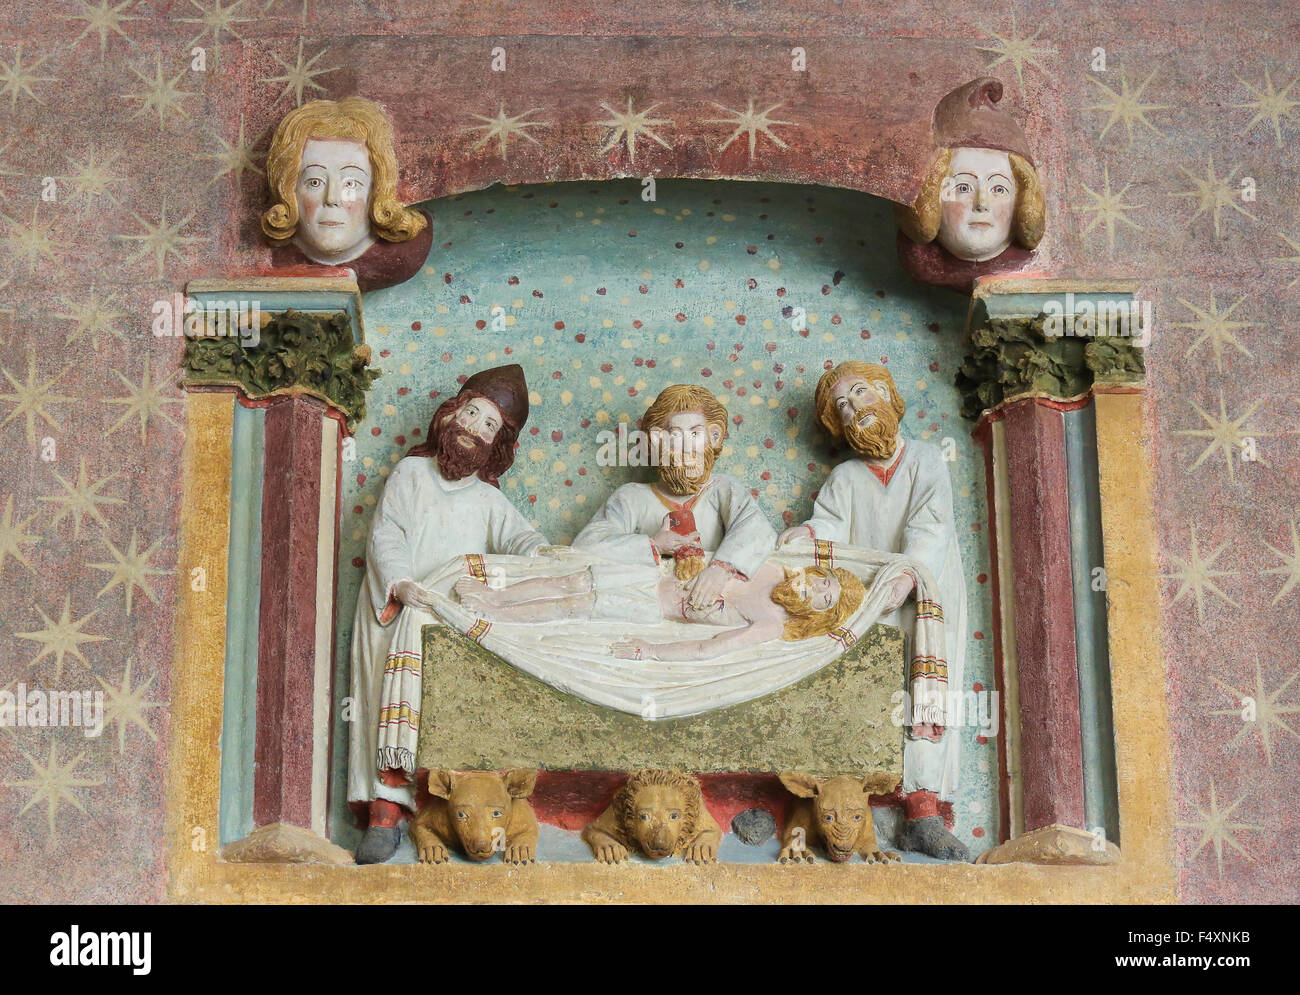 BURGOS, España - 13 de agosto de 2014: escultura pintada de tres hombres y el Cuerpo de Cristo en la Catedral de Burgos, Castilla, Spa Foto de stock